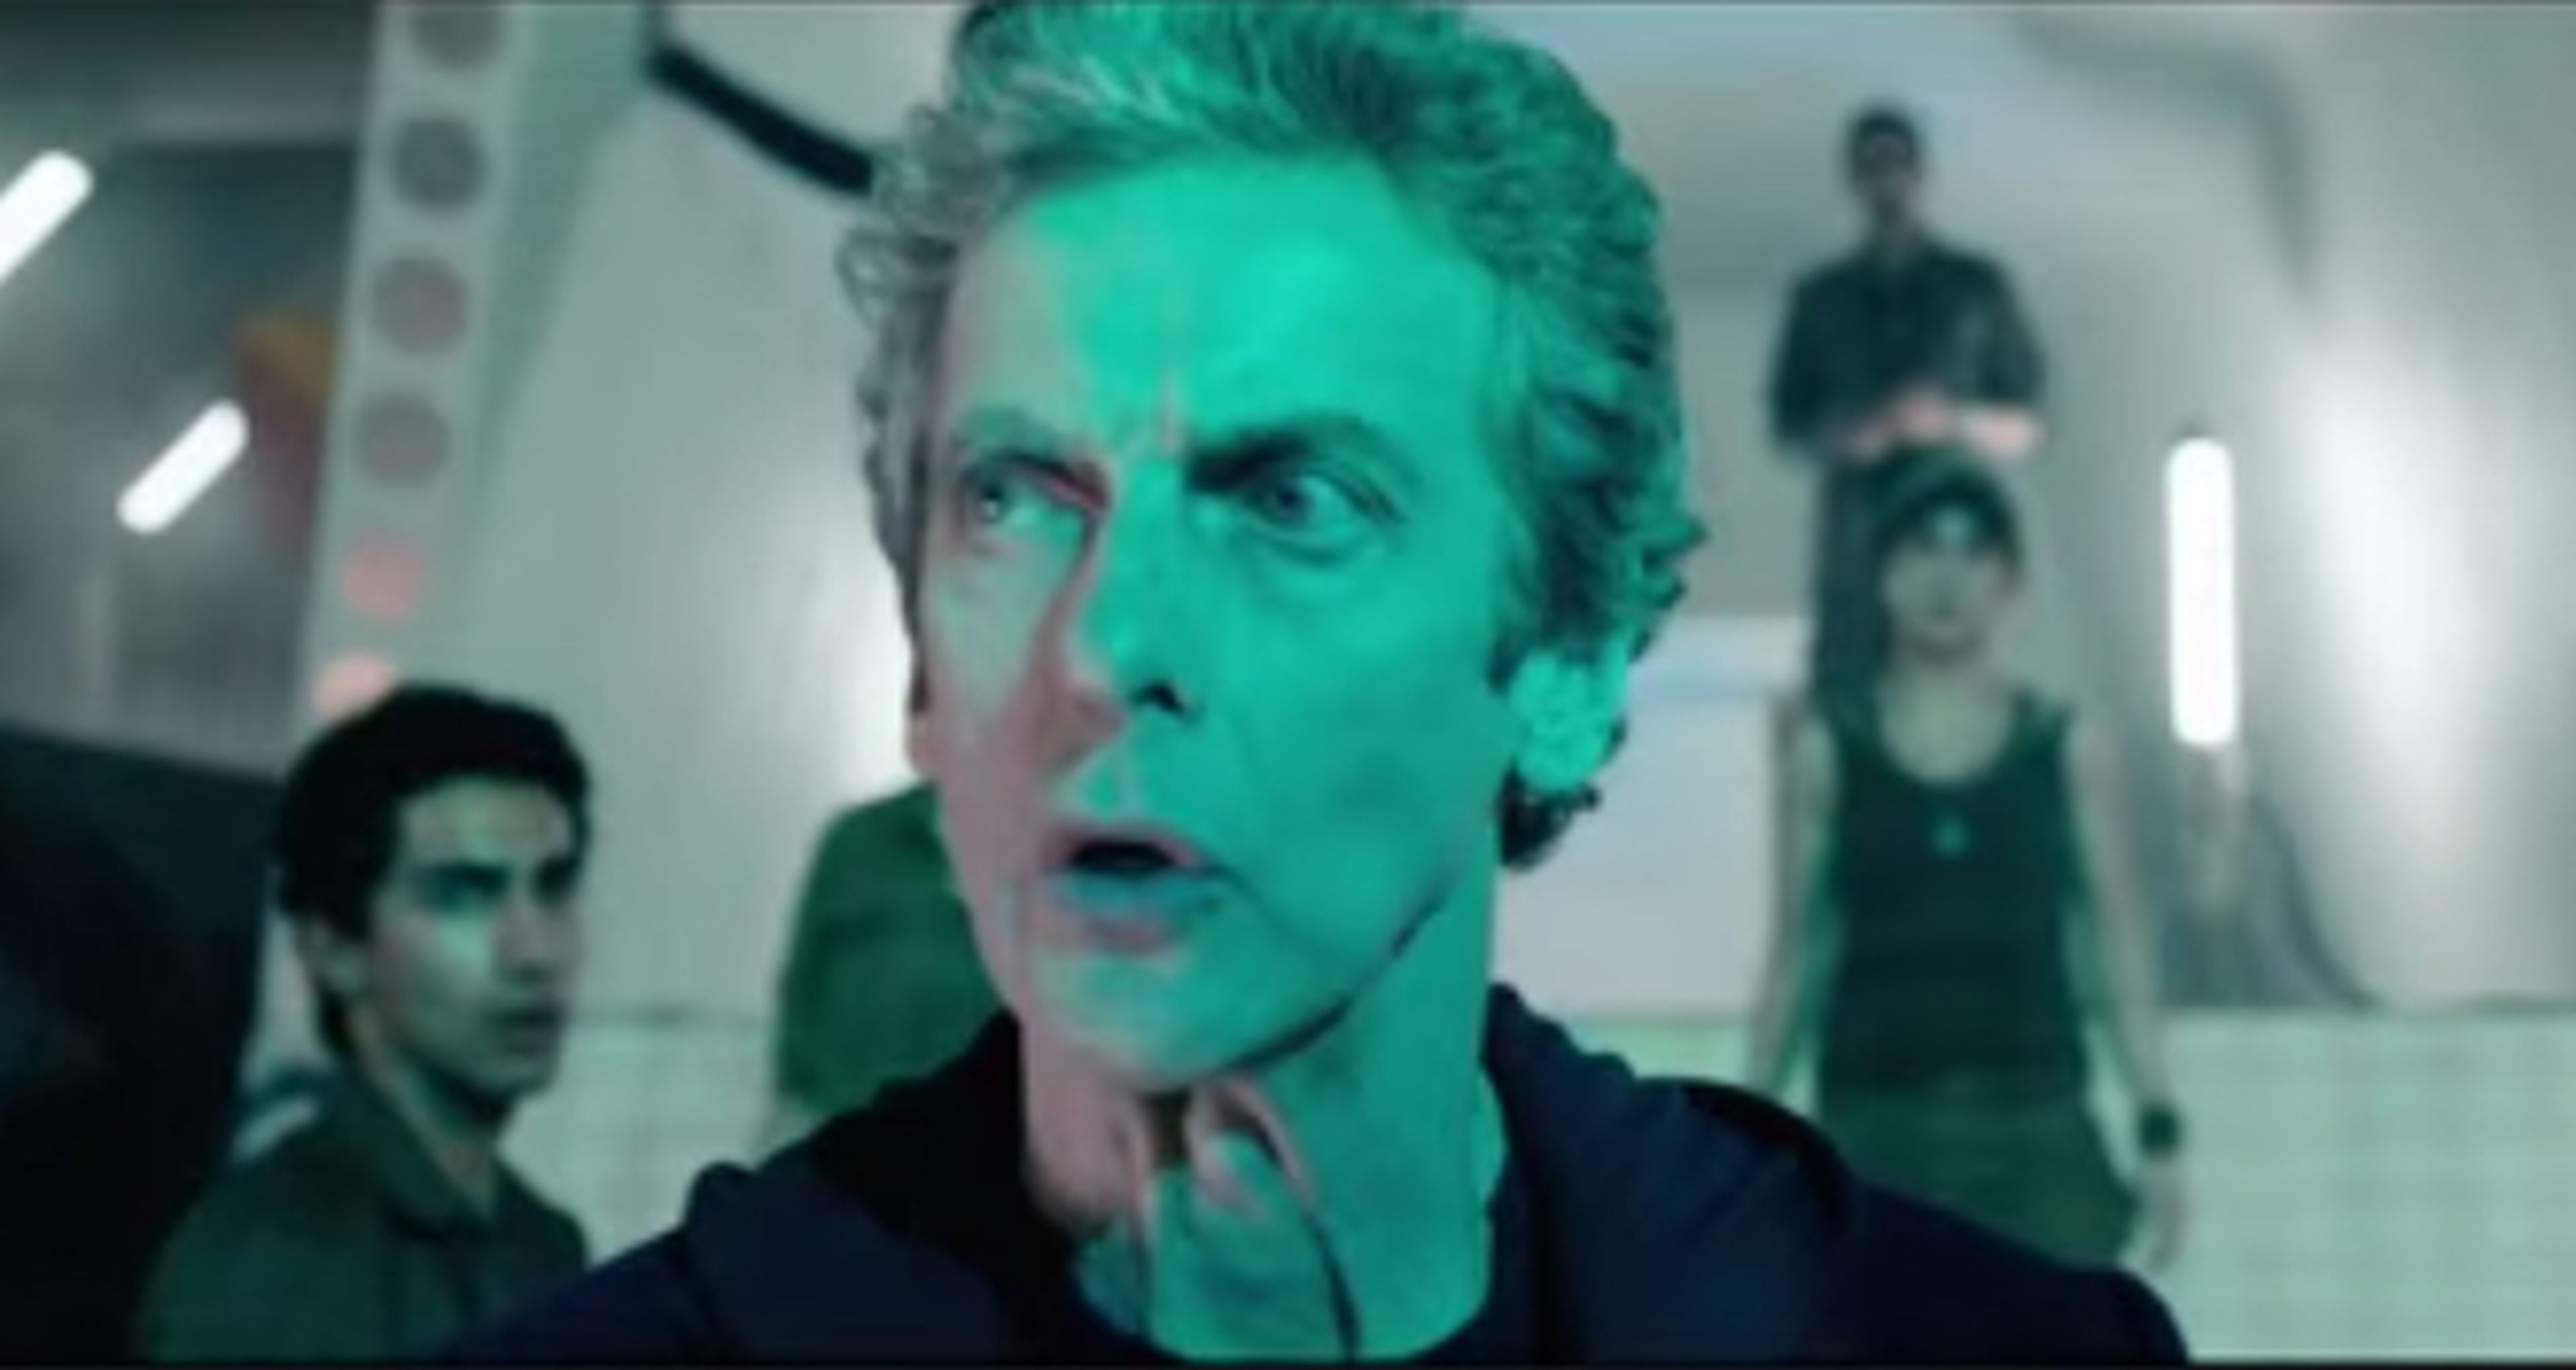 Doctor Who: Under the lake - trailer del episodio 3 de la temporada 9